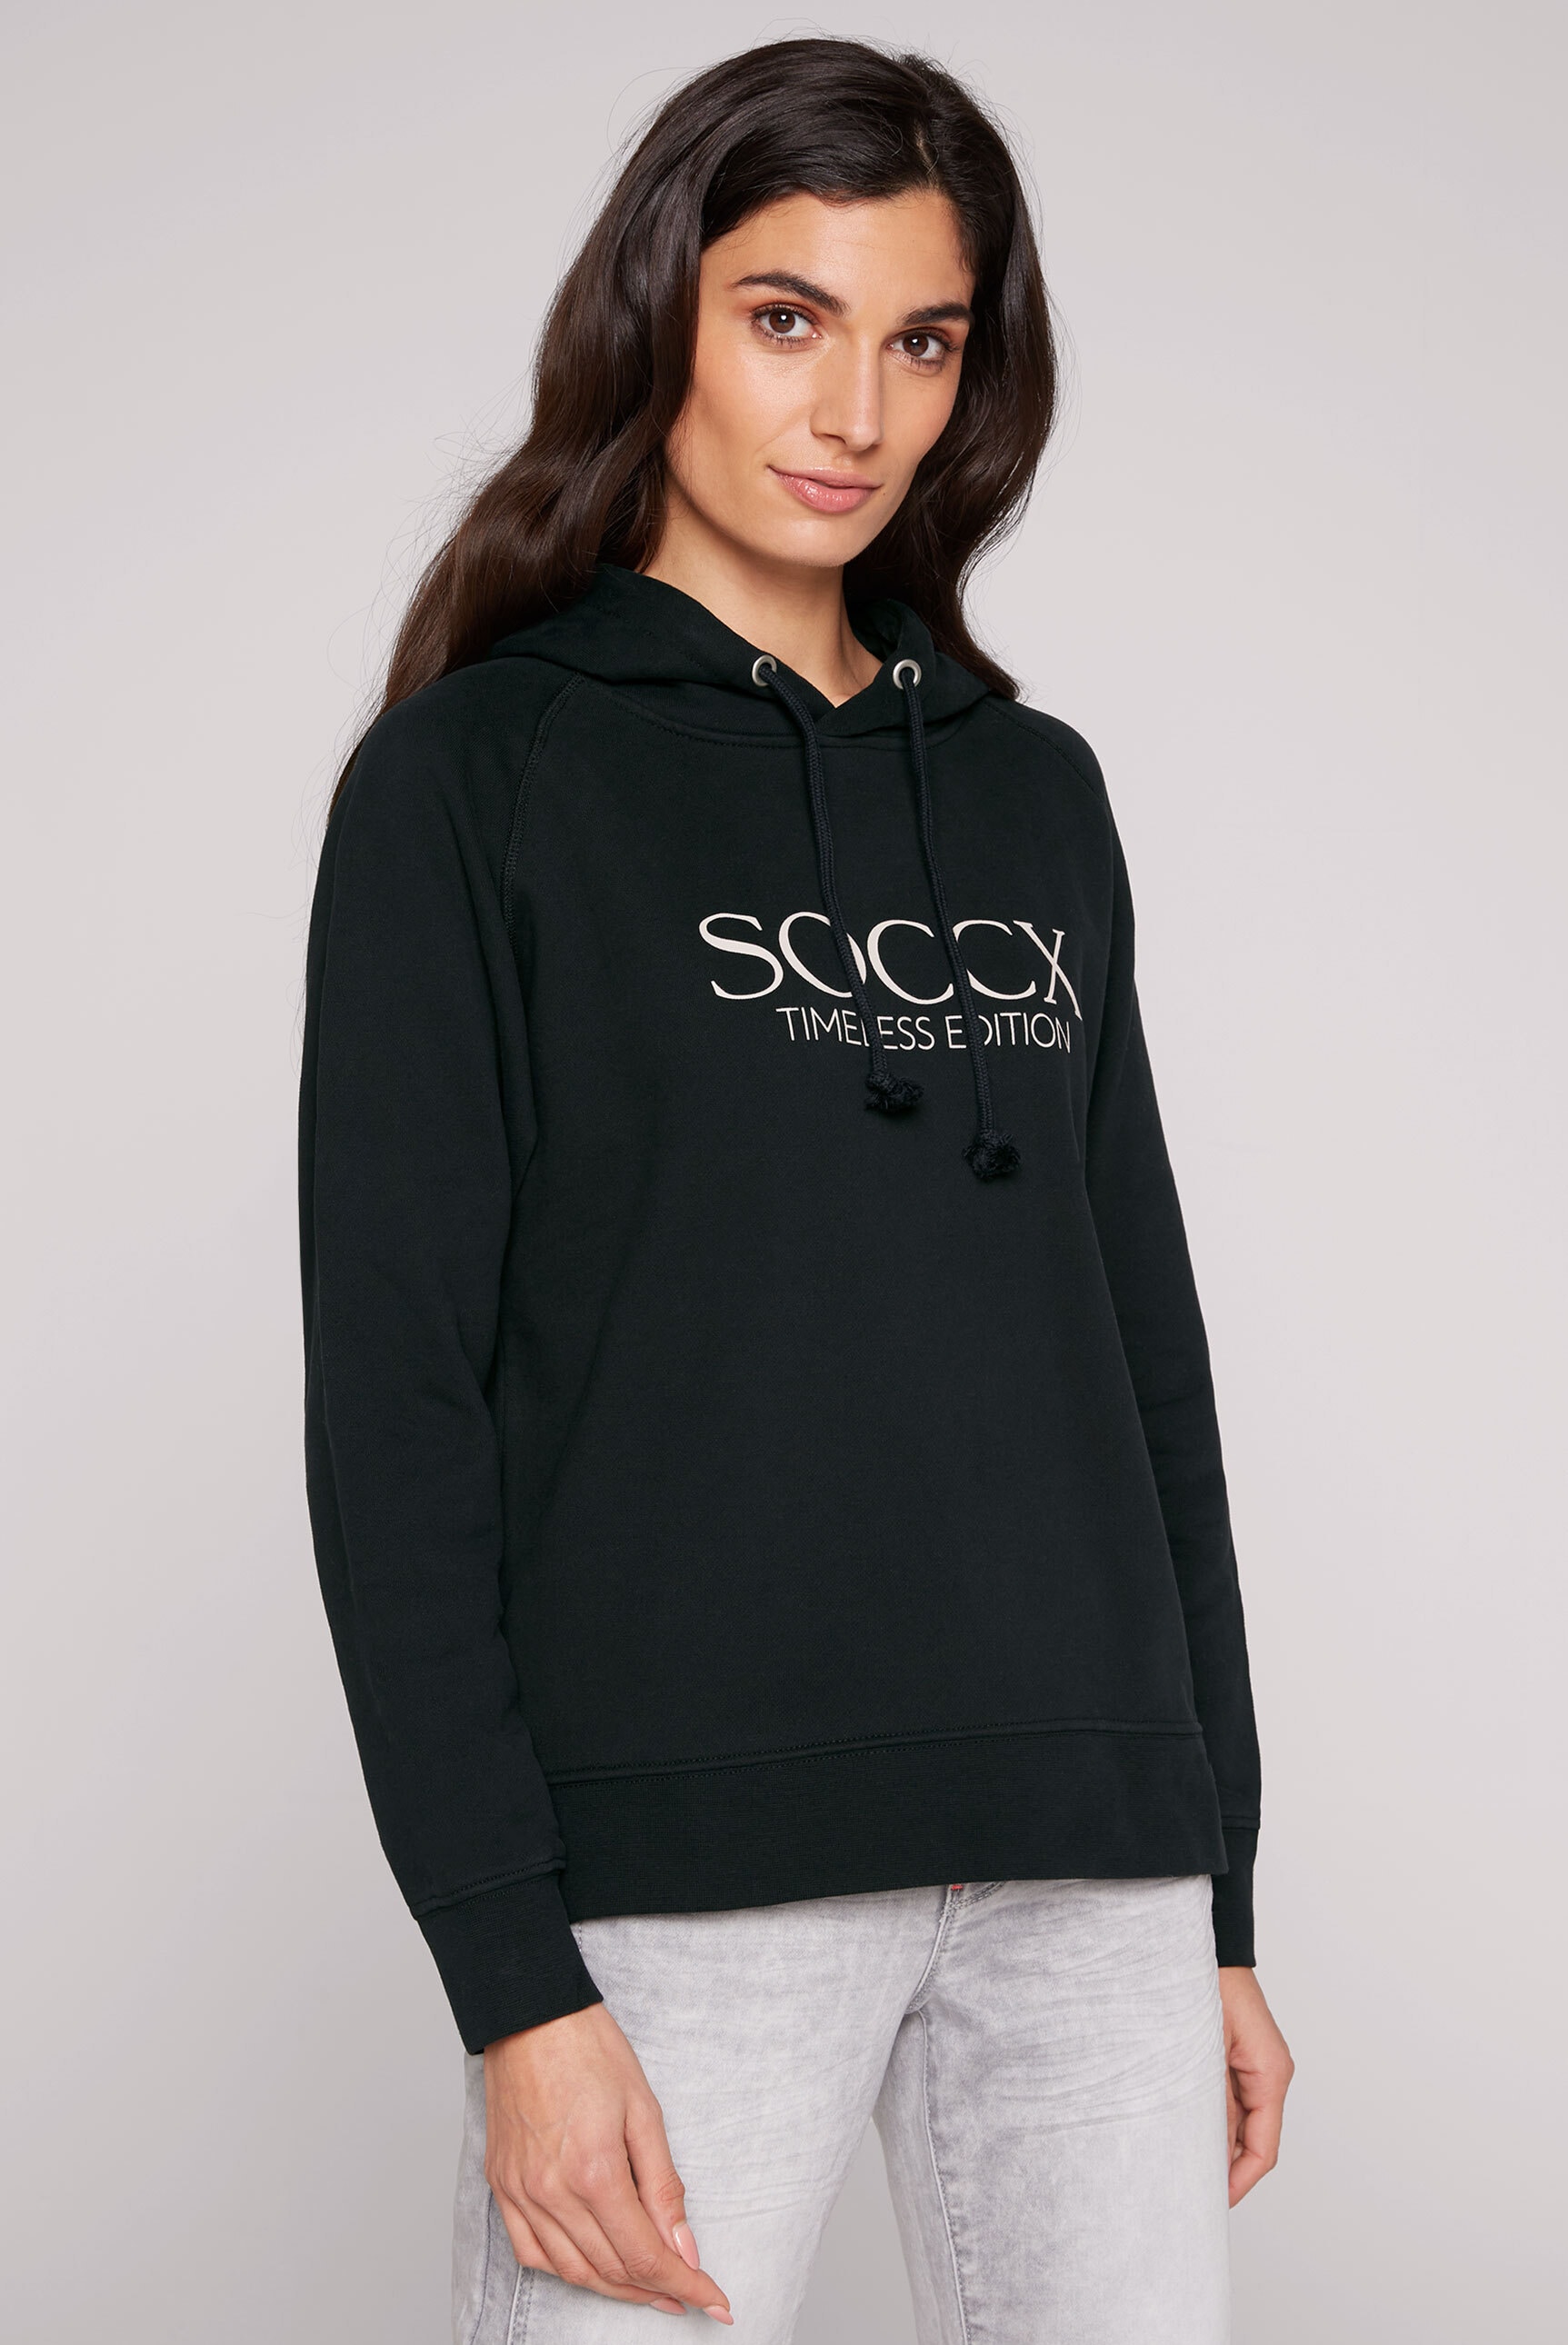 mit kaufen Seitenschlitze Kapuzensweatshirt, SOCCX online